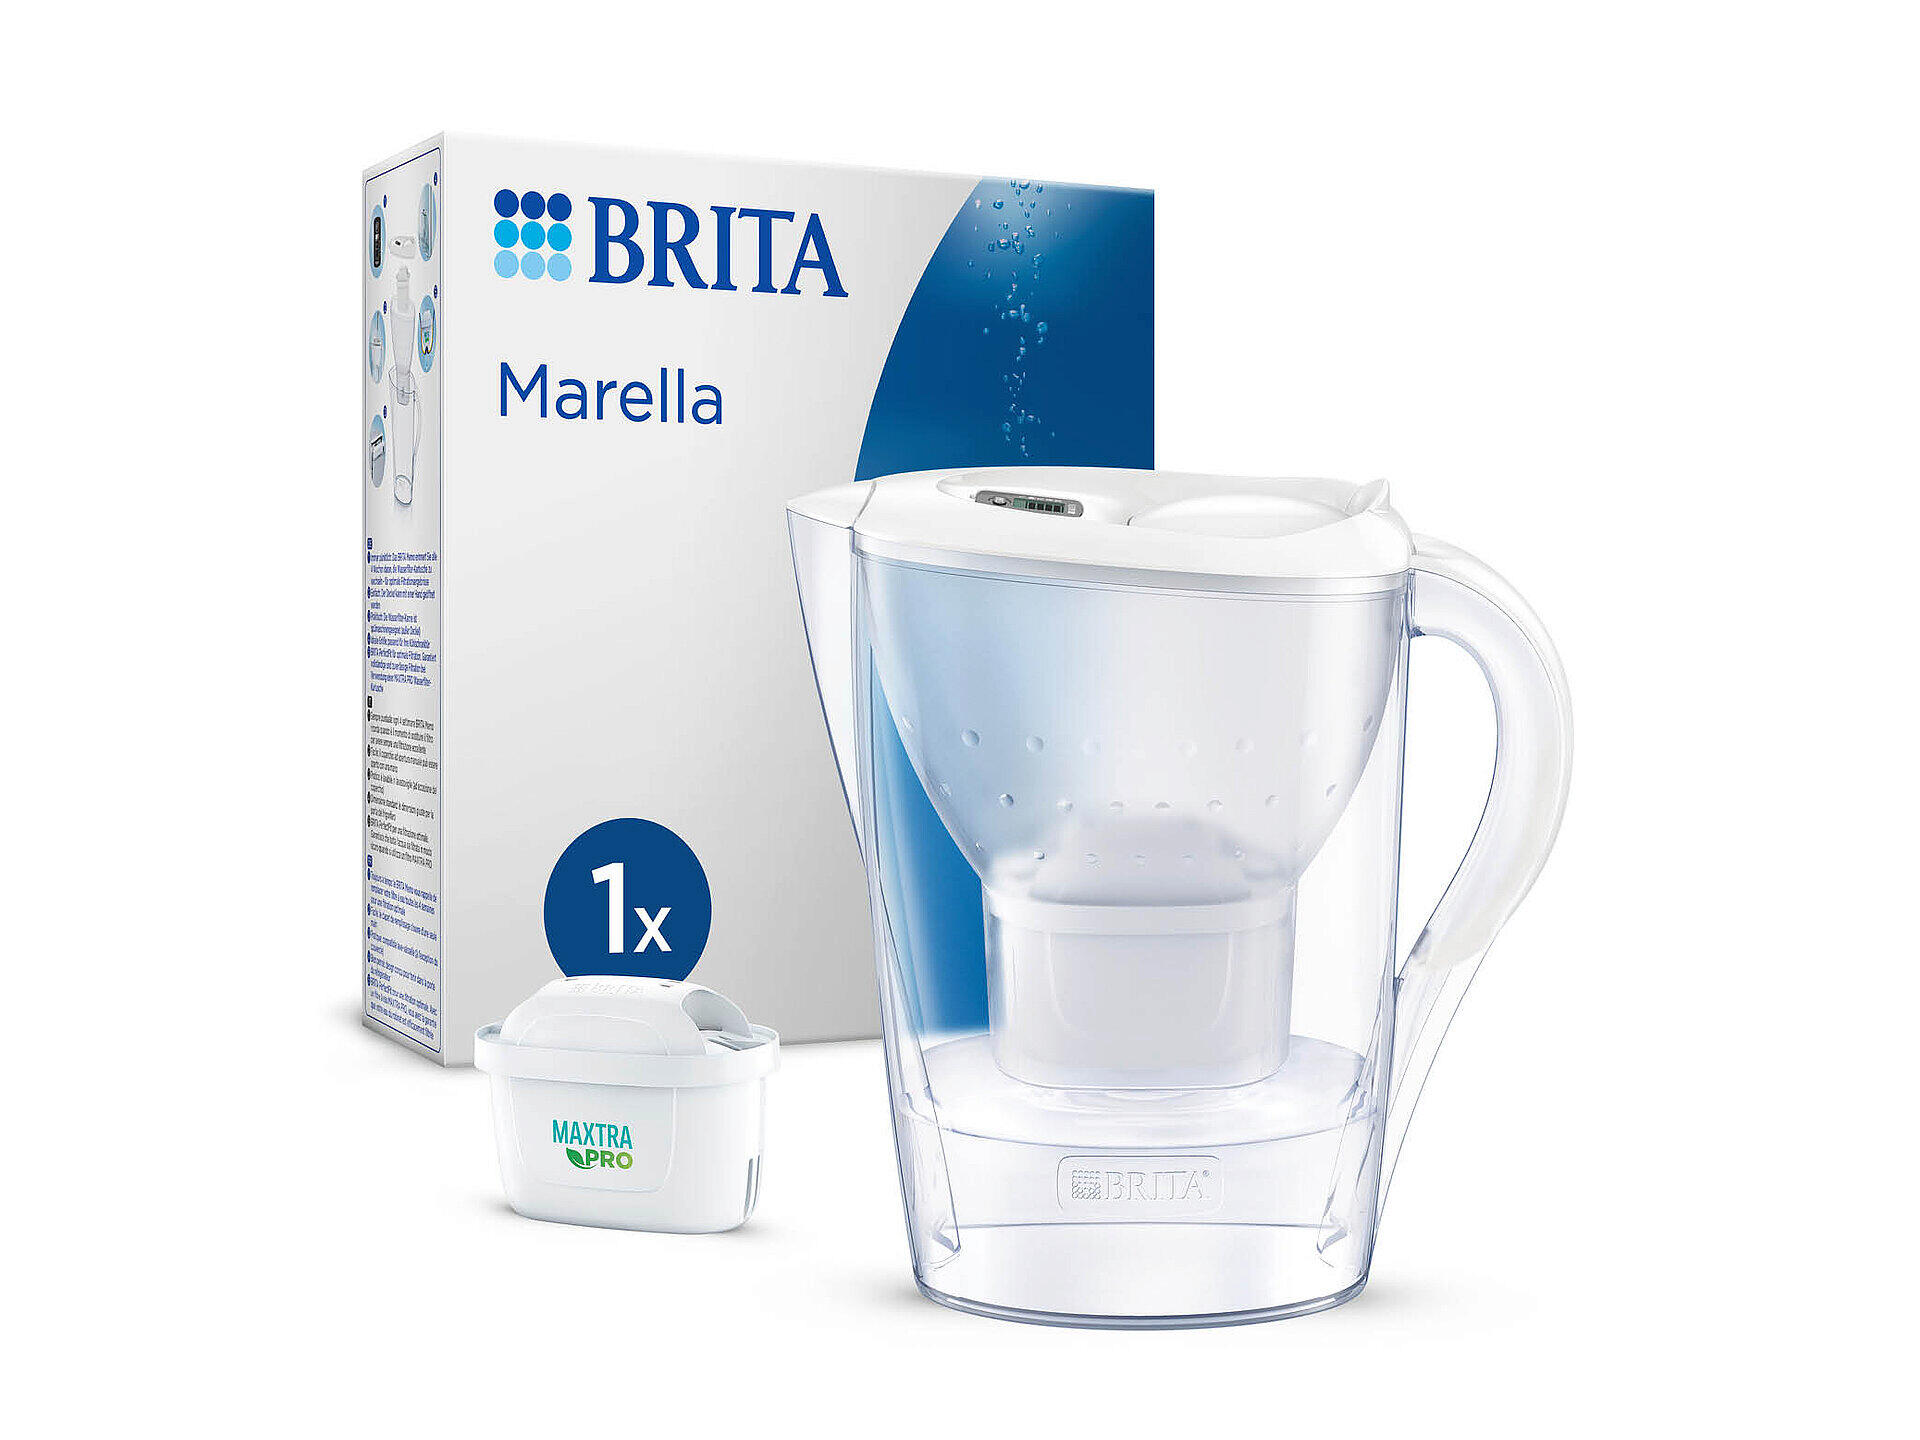 Brita Marella waterfilterkan 2,4l wit + 1 Maxtra Pro All-in-One filterpatroon